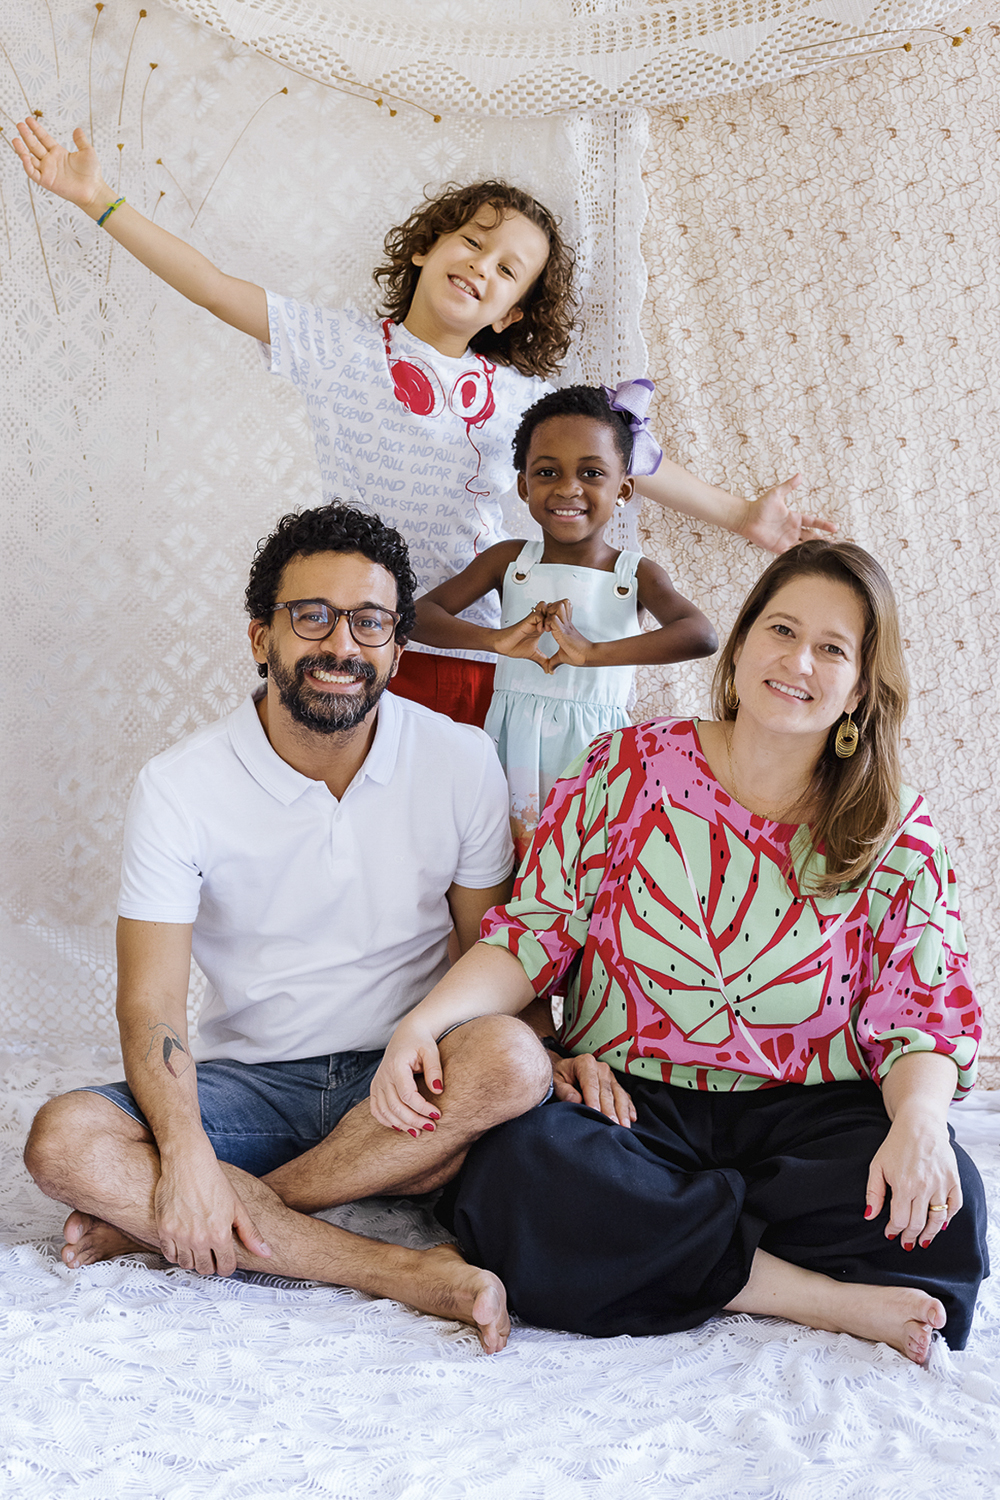 AMOR INSTANTÂNEO - Depois de três abortos espontâneos, Lara Godoi e o marido, Carlos Ranniere, pais de Nuno, 9, partiram para o Malaui, onde se encantaram com Betha, então com 2, e resolveram adotá-la. Passou-se um ano até a menina chegar ao Brasil. “Já a amávamos profundamente”, diz o pai. -